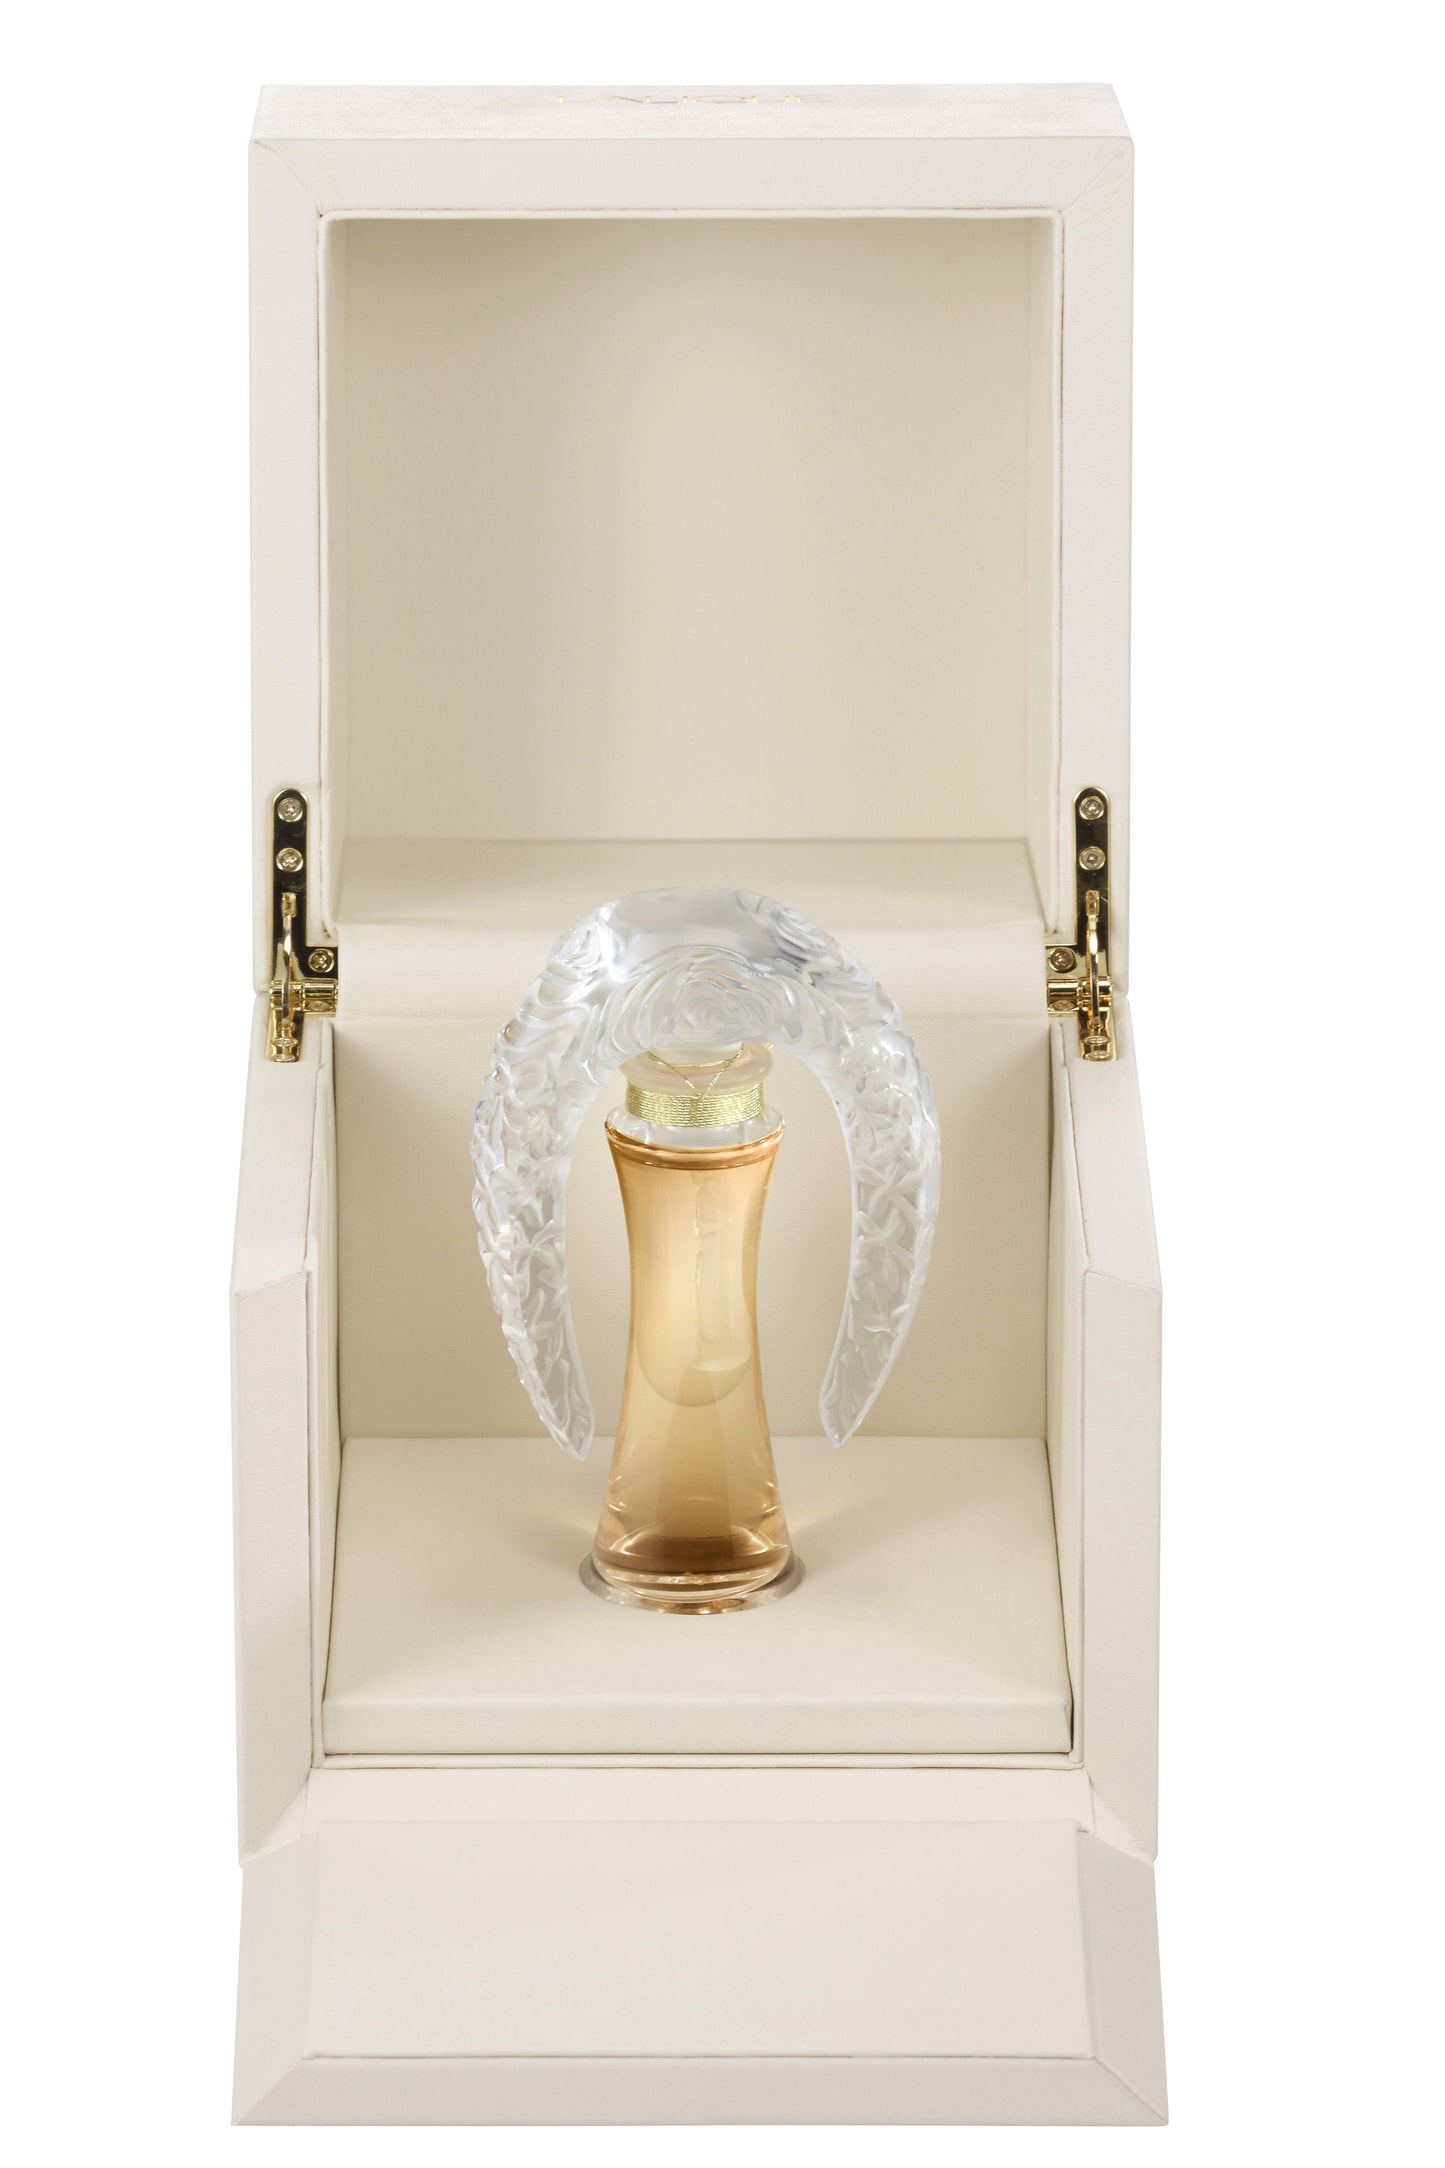 Lalique de Lalique 1.0 oz Limited Edition 2012 "Sillage" Crystal Extrait de Parfum